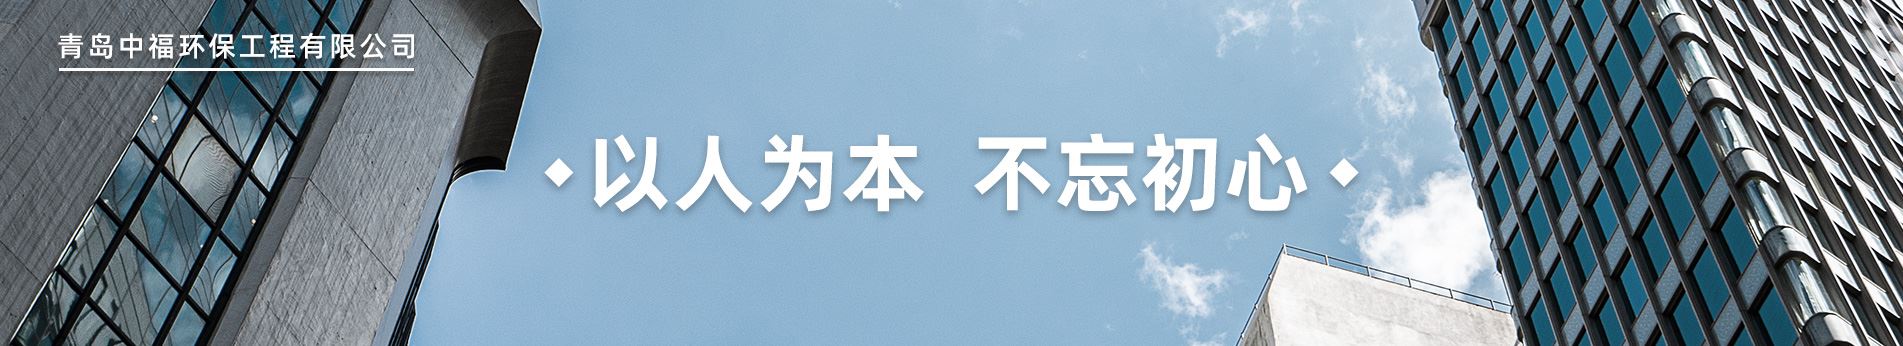 联系乐虎国际lehu88官方网站